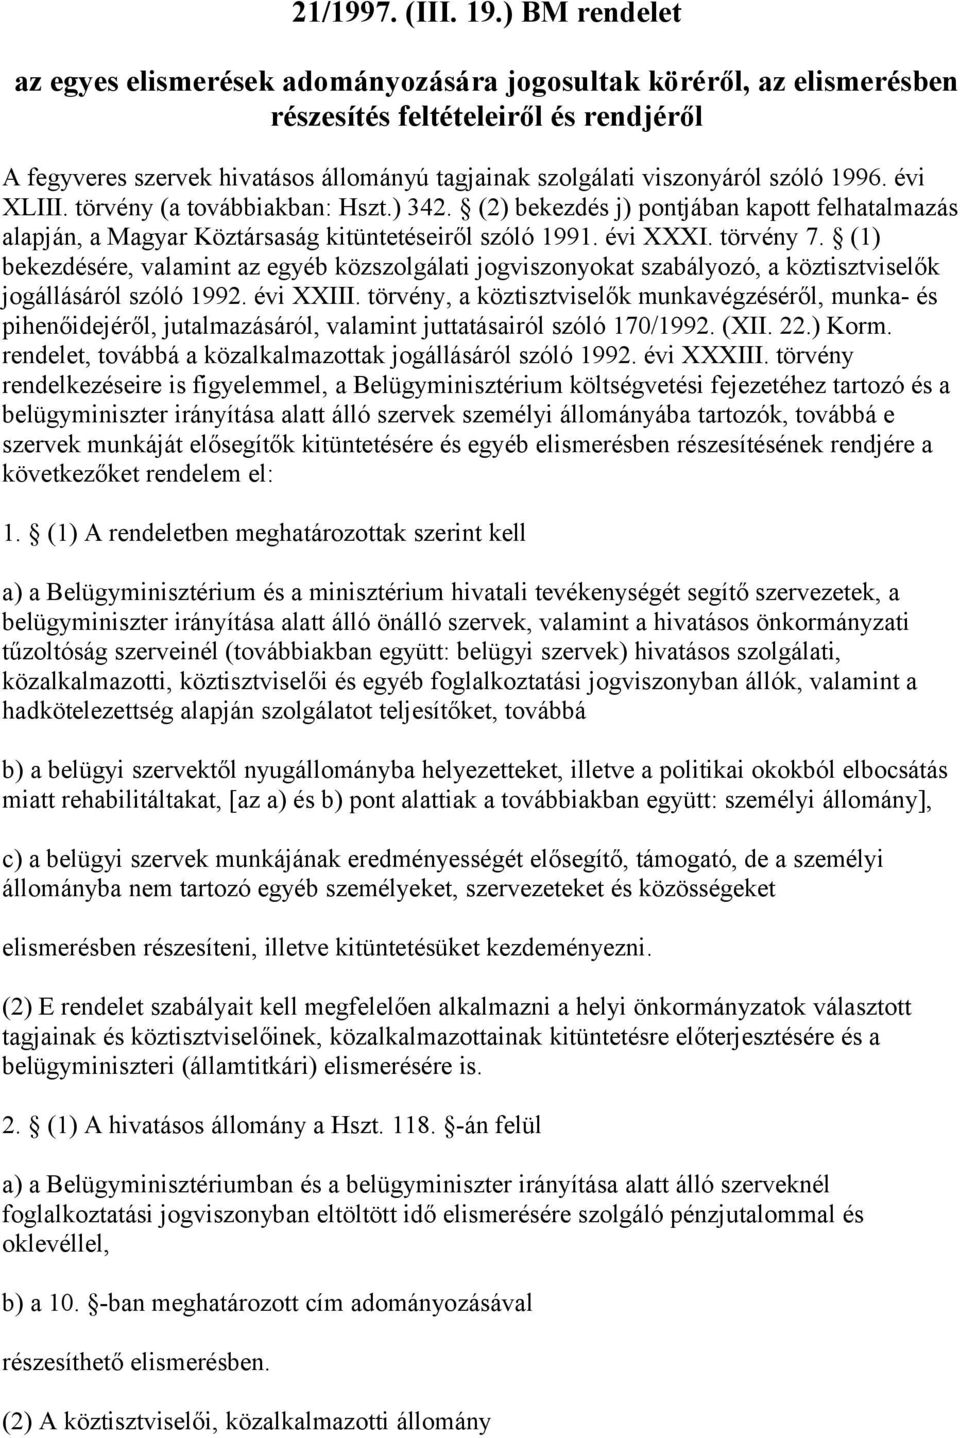 szóló 1996. évi XLIII. törvény (a továbbiakban: Hszt.) 342. (2) bekezdés j) pontjában kapott felhatalmazás alapján, a Magyar Köztársaság kitüntetéseiről szóló 1991. évi XXXI. törvény 7.